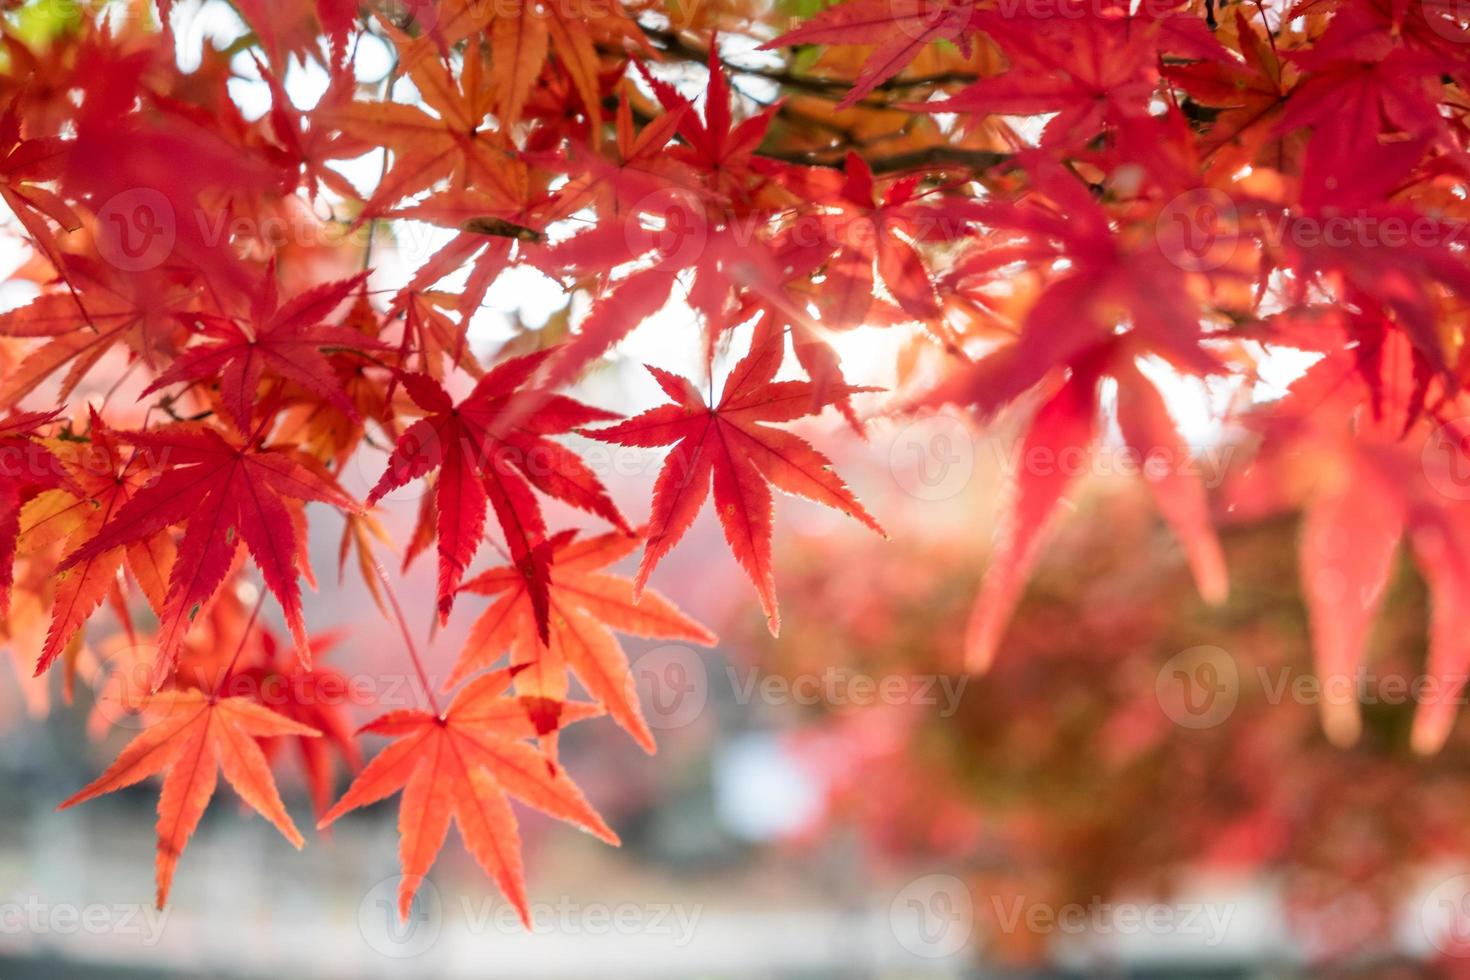 feuilles d'érable rouge dans le jardin photo